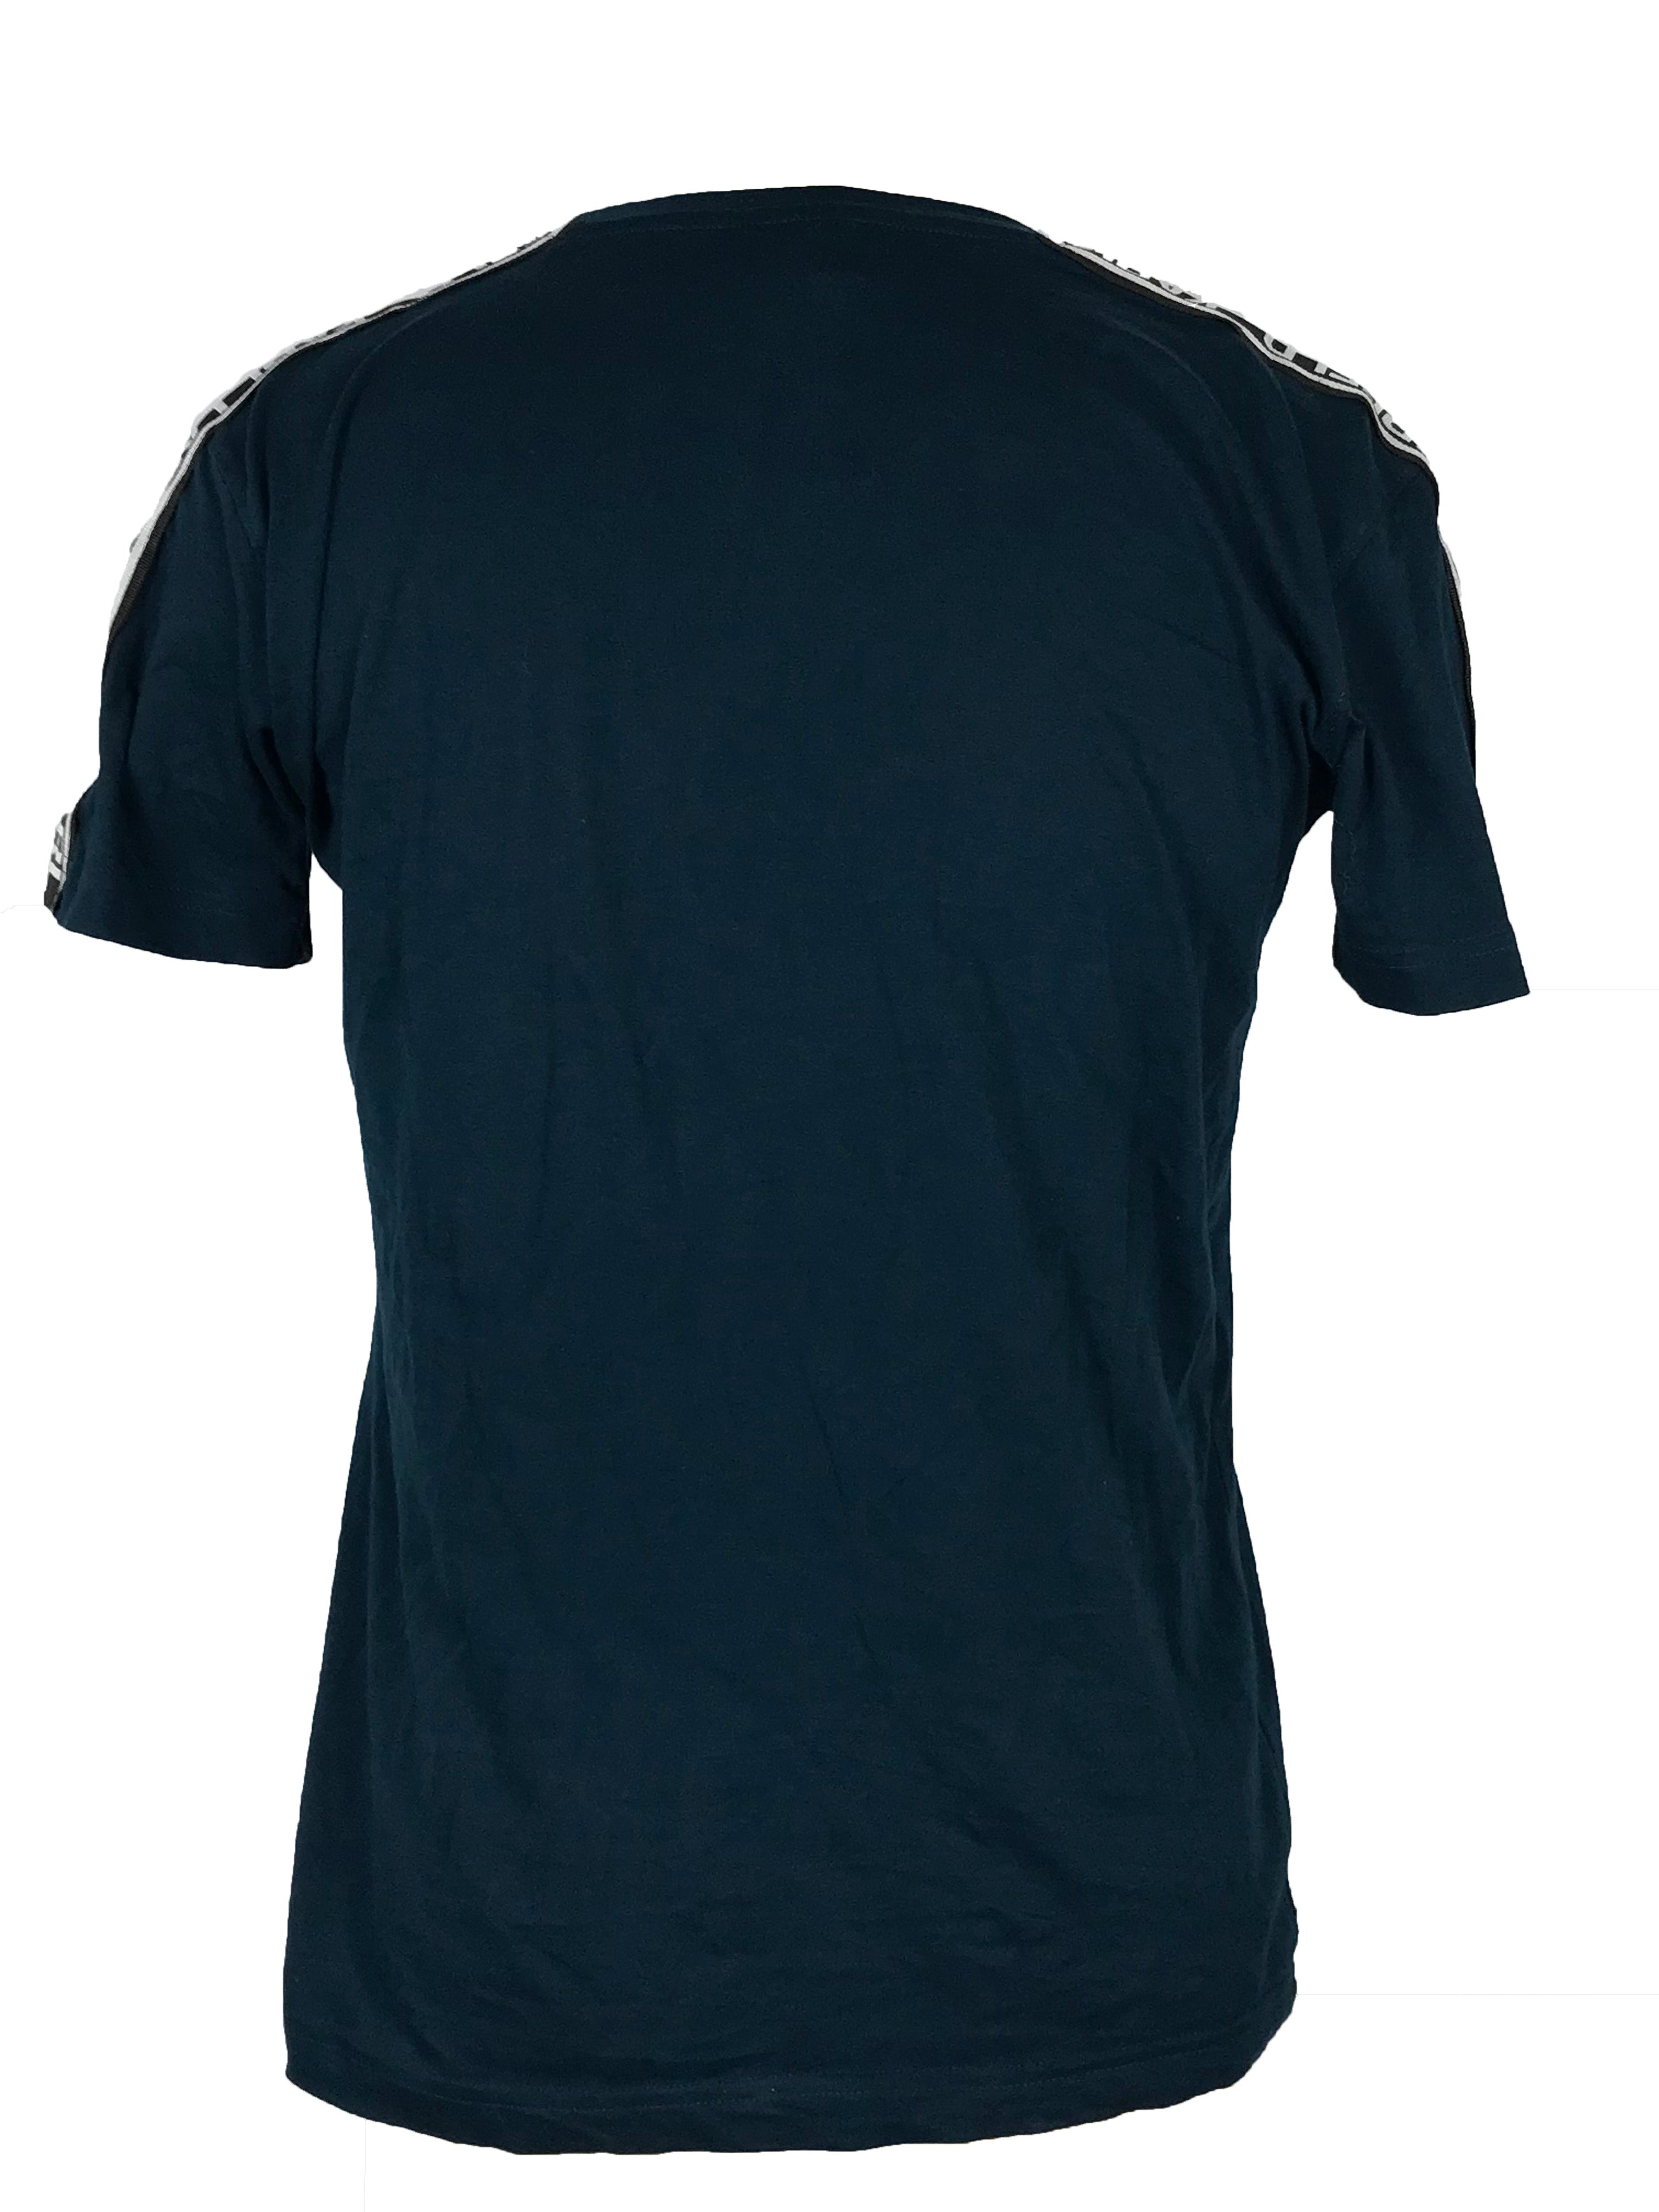 Karl Lagerfeld Turquoise Short Sleeve T-Shirt Men's Size S